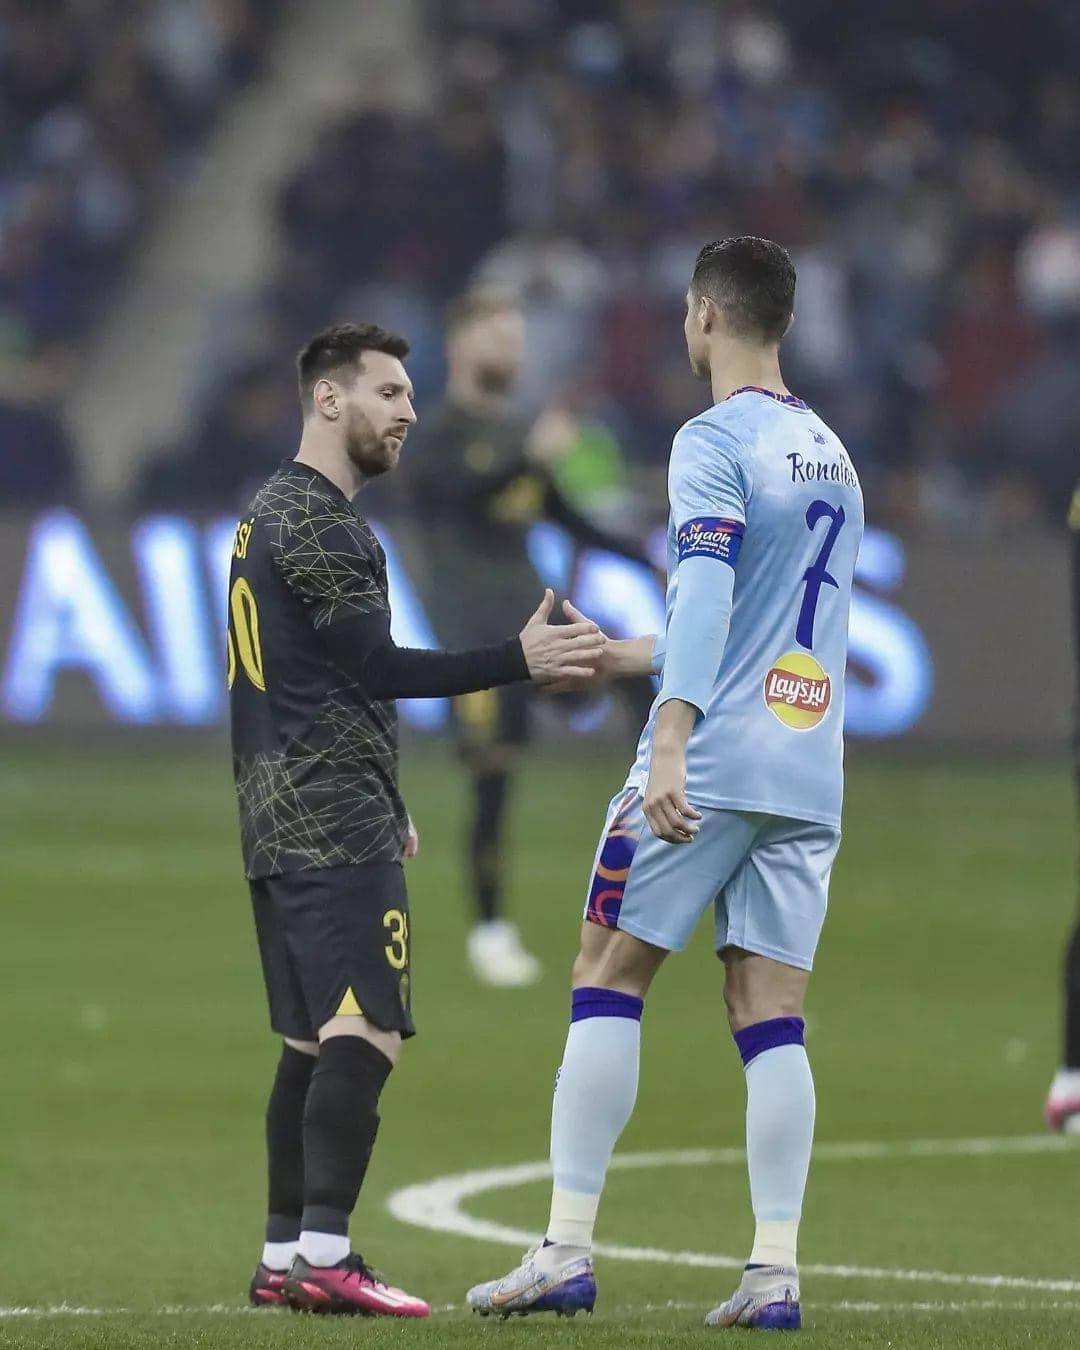 Cả Ronaldo và Messi đều ghi bàn, Neymar sút hỏng penalty trong trận giao hữu - Ảnh 2.